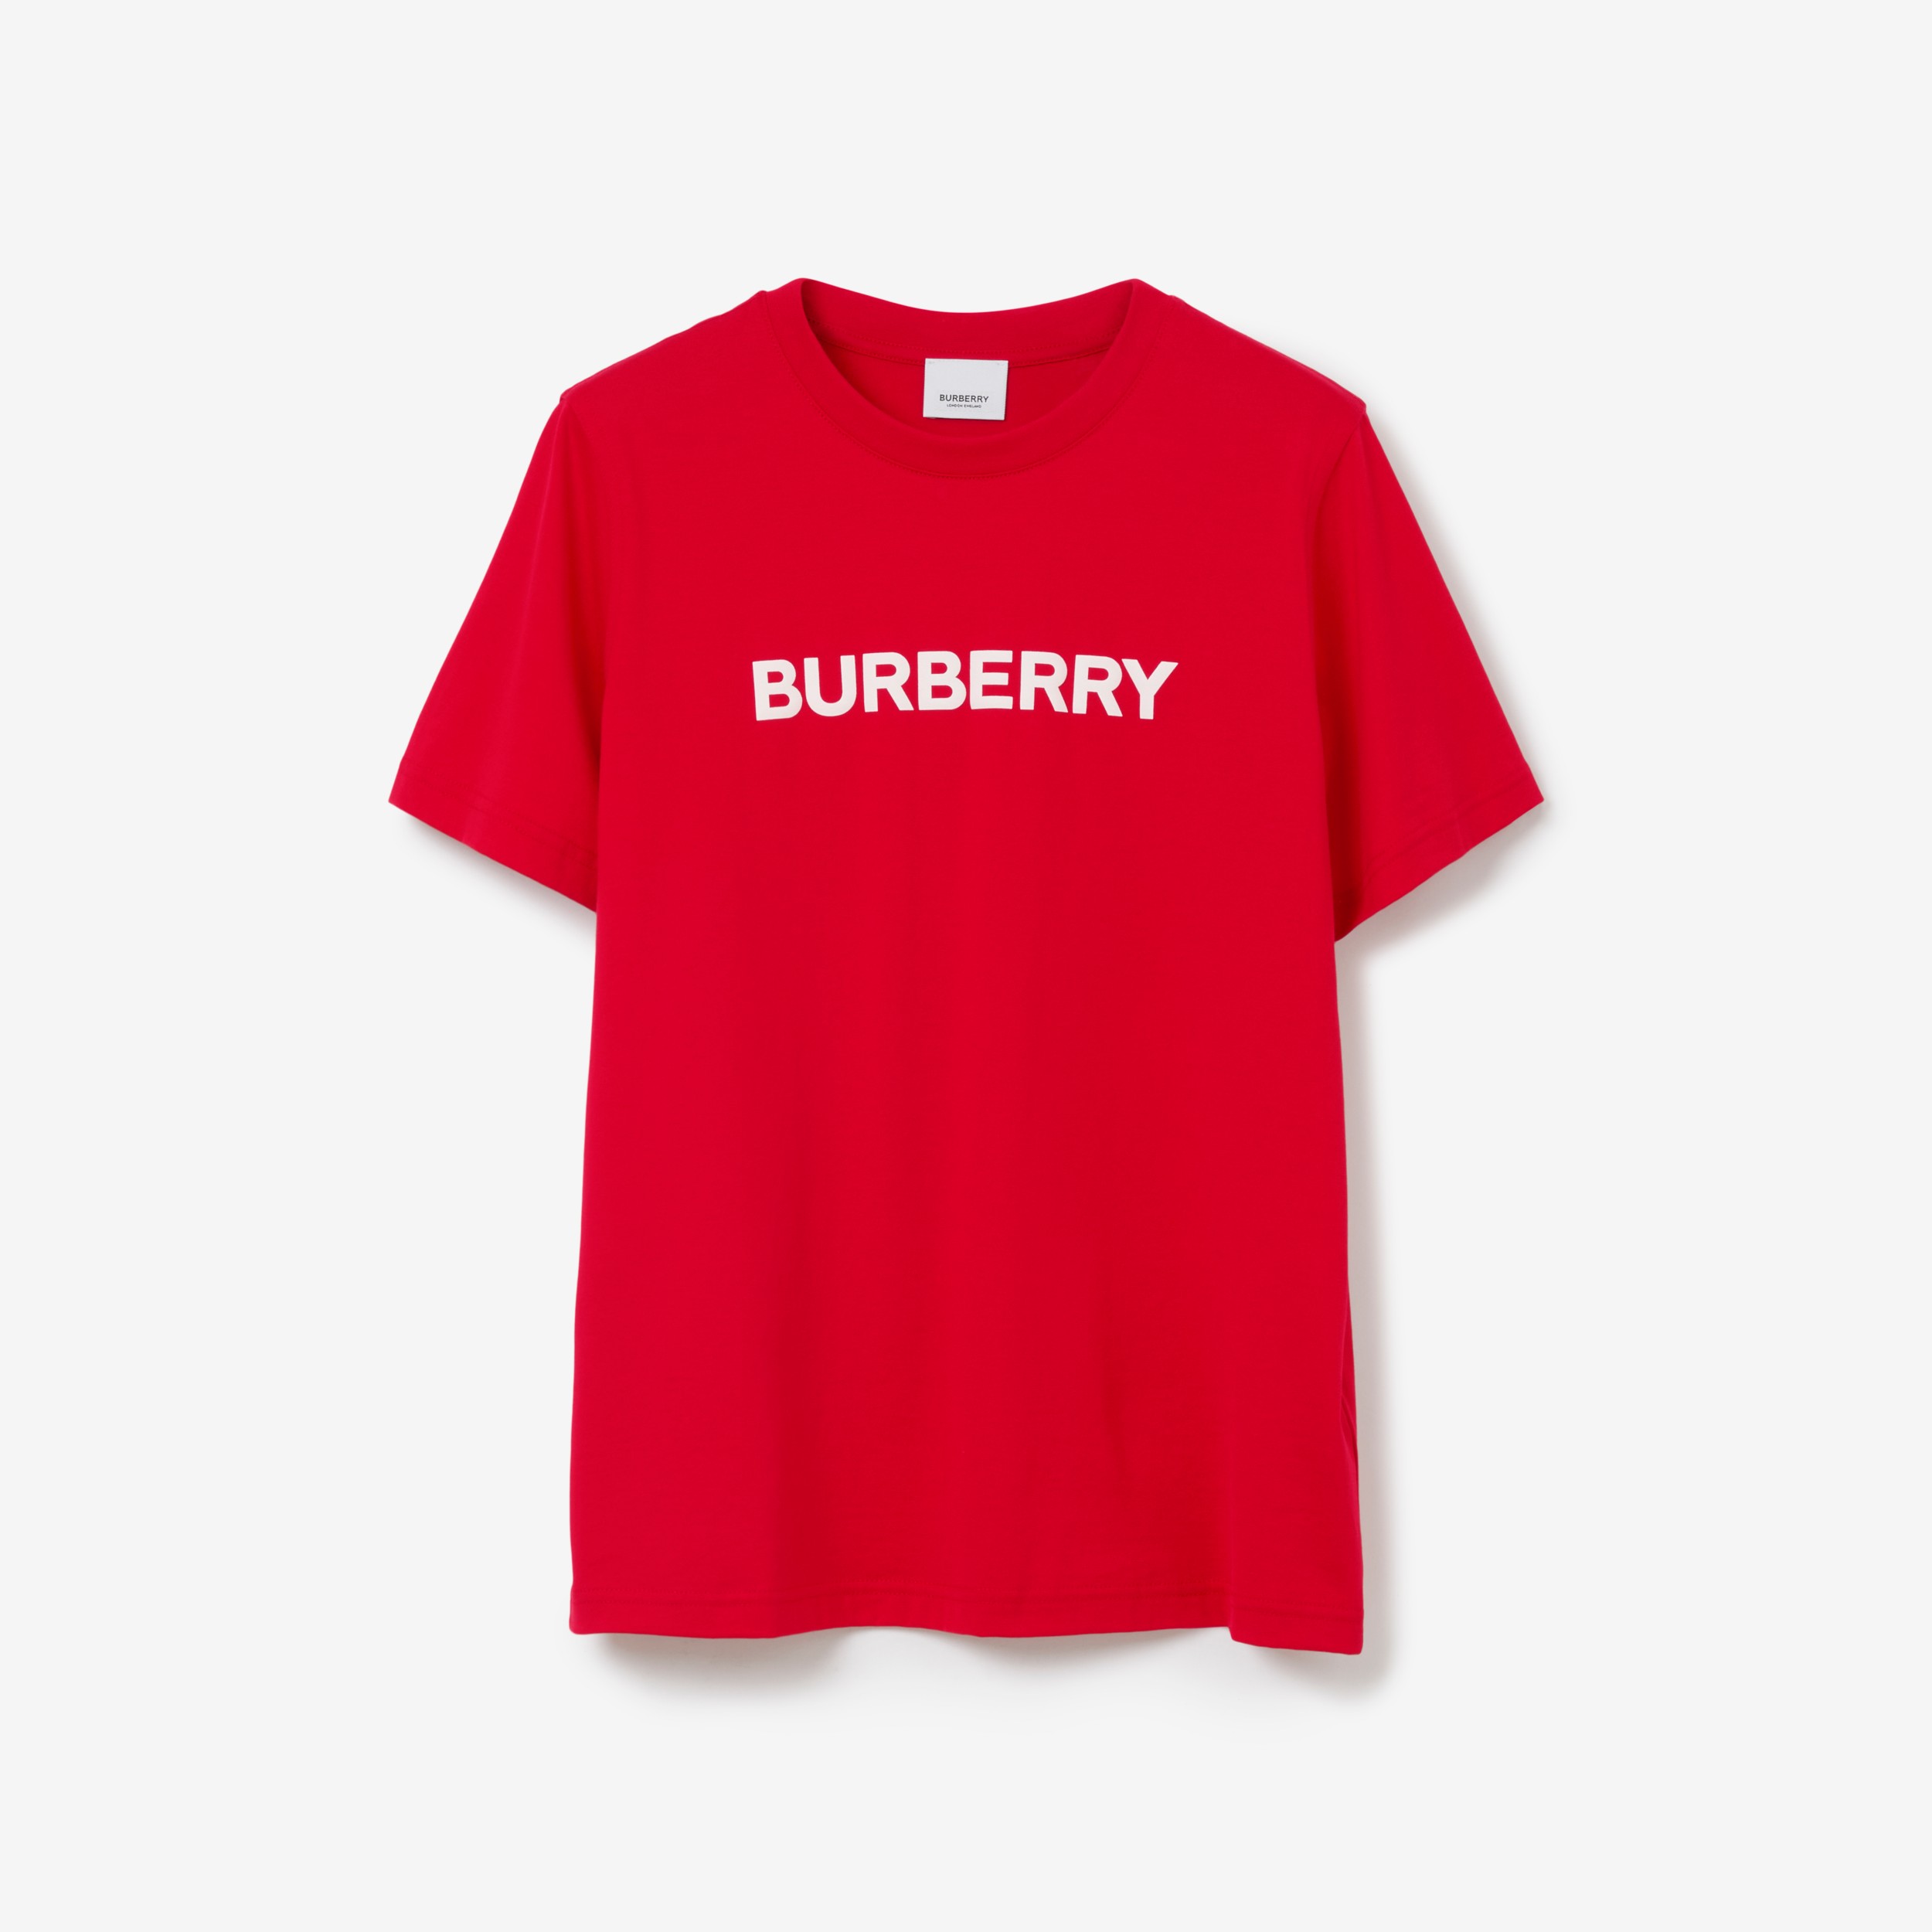 Top 57+ imagen burberry red t shirt